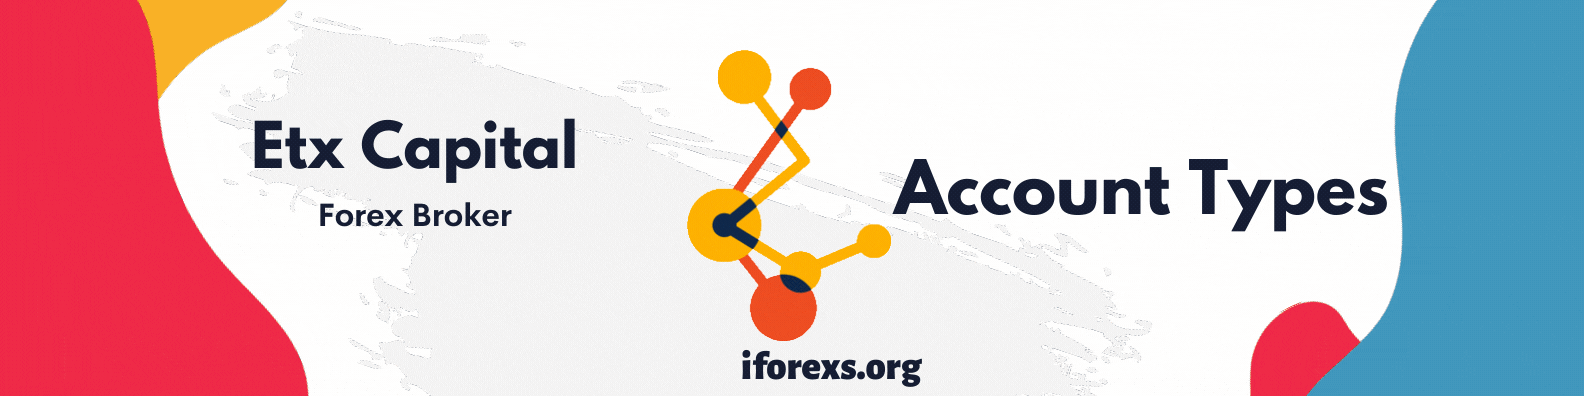 Etx Capital Account Types